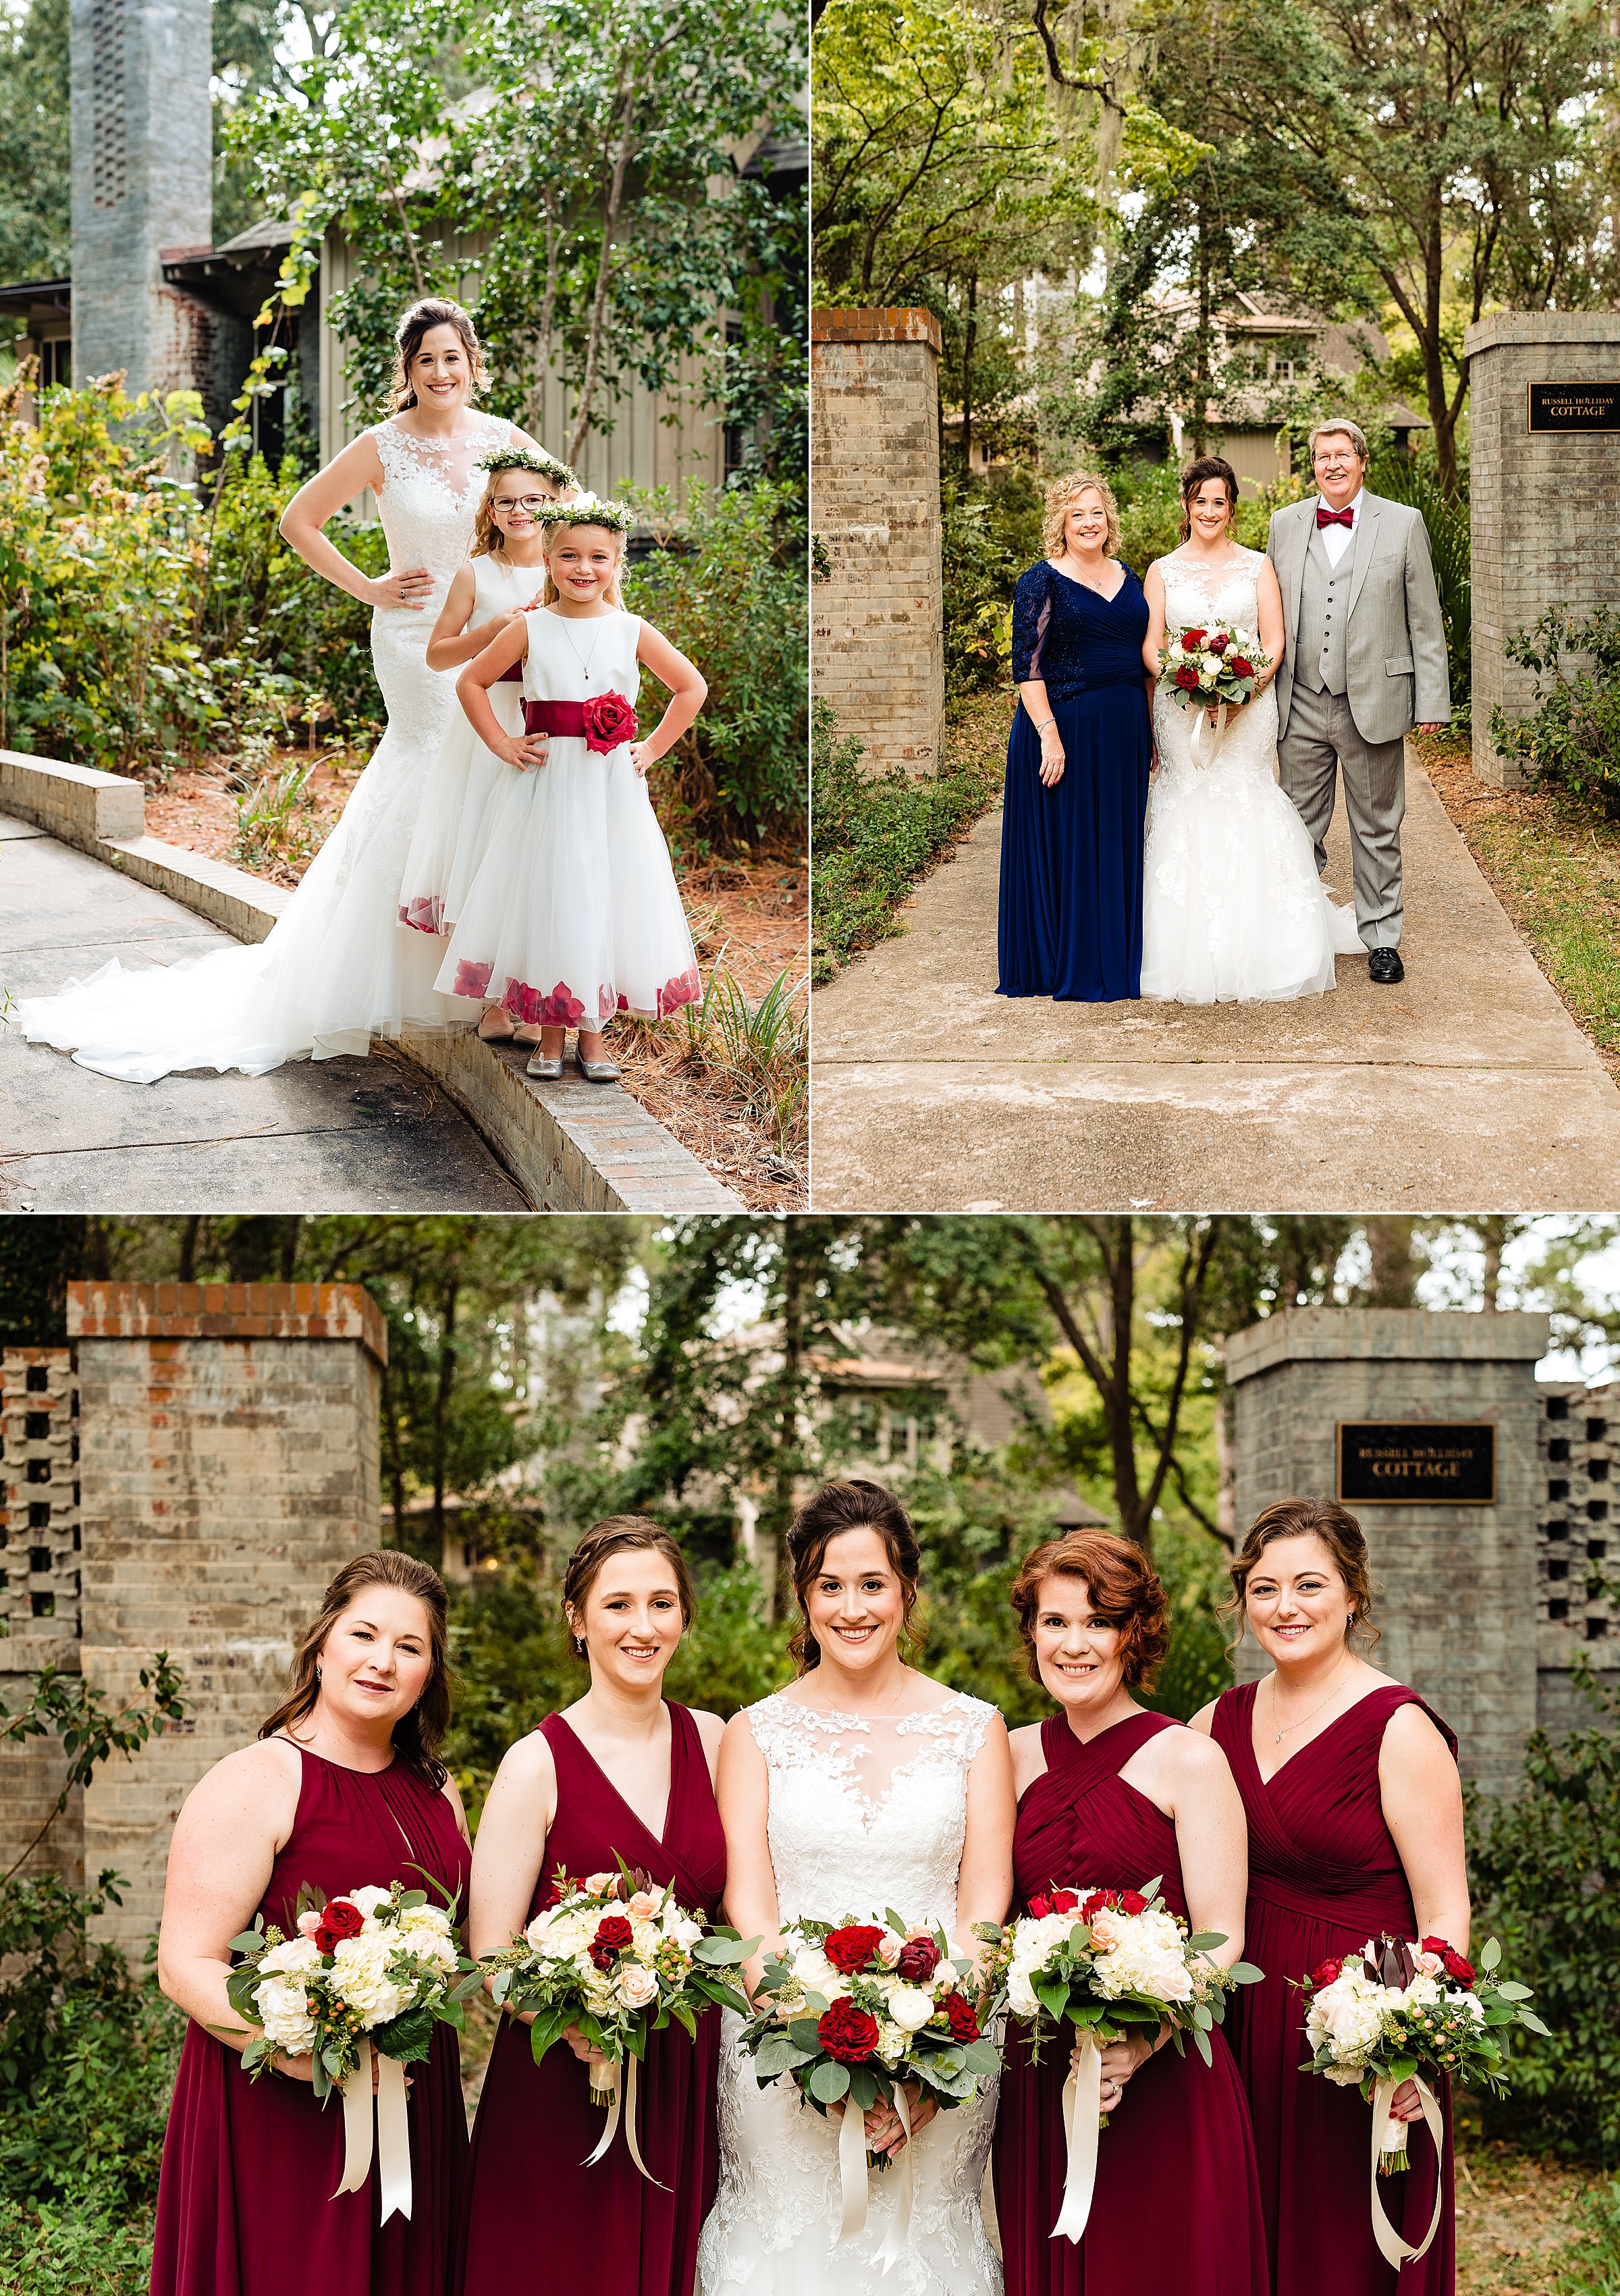 Bridesamaid Portraits | Brookgreen Gardens, Brookgreen Gardens Wedding, Carolina Wedding, Colorful Wedding, Emotional Wedding, kivusandcamera.com, South Carolina Wedding, Southern Wedding